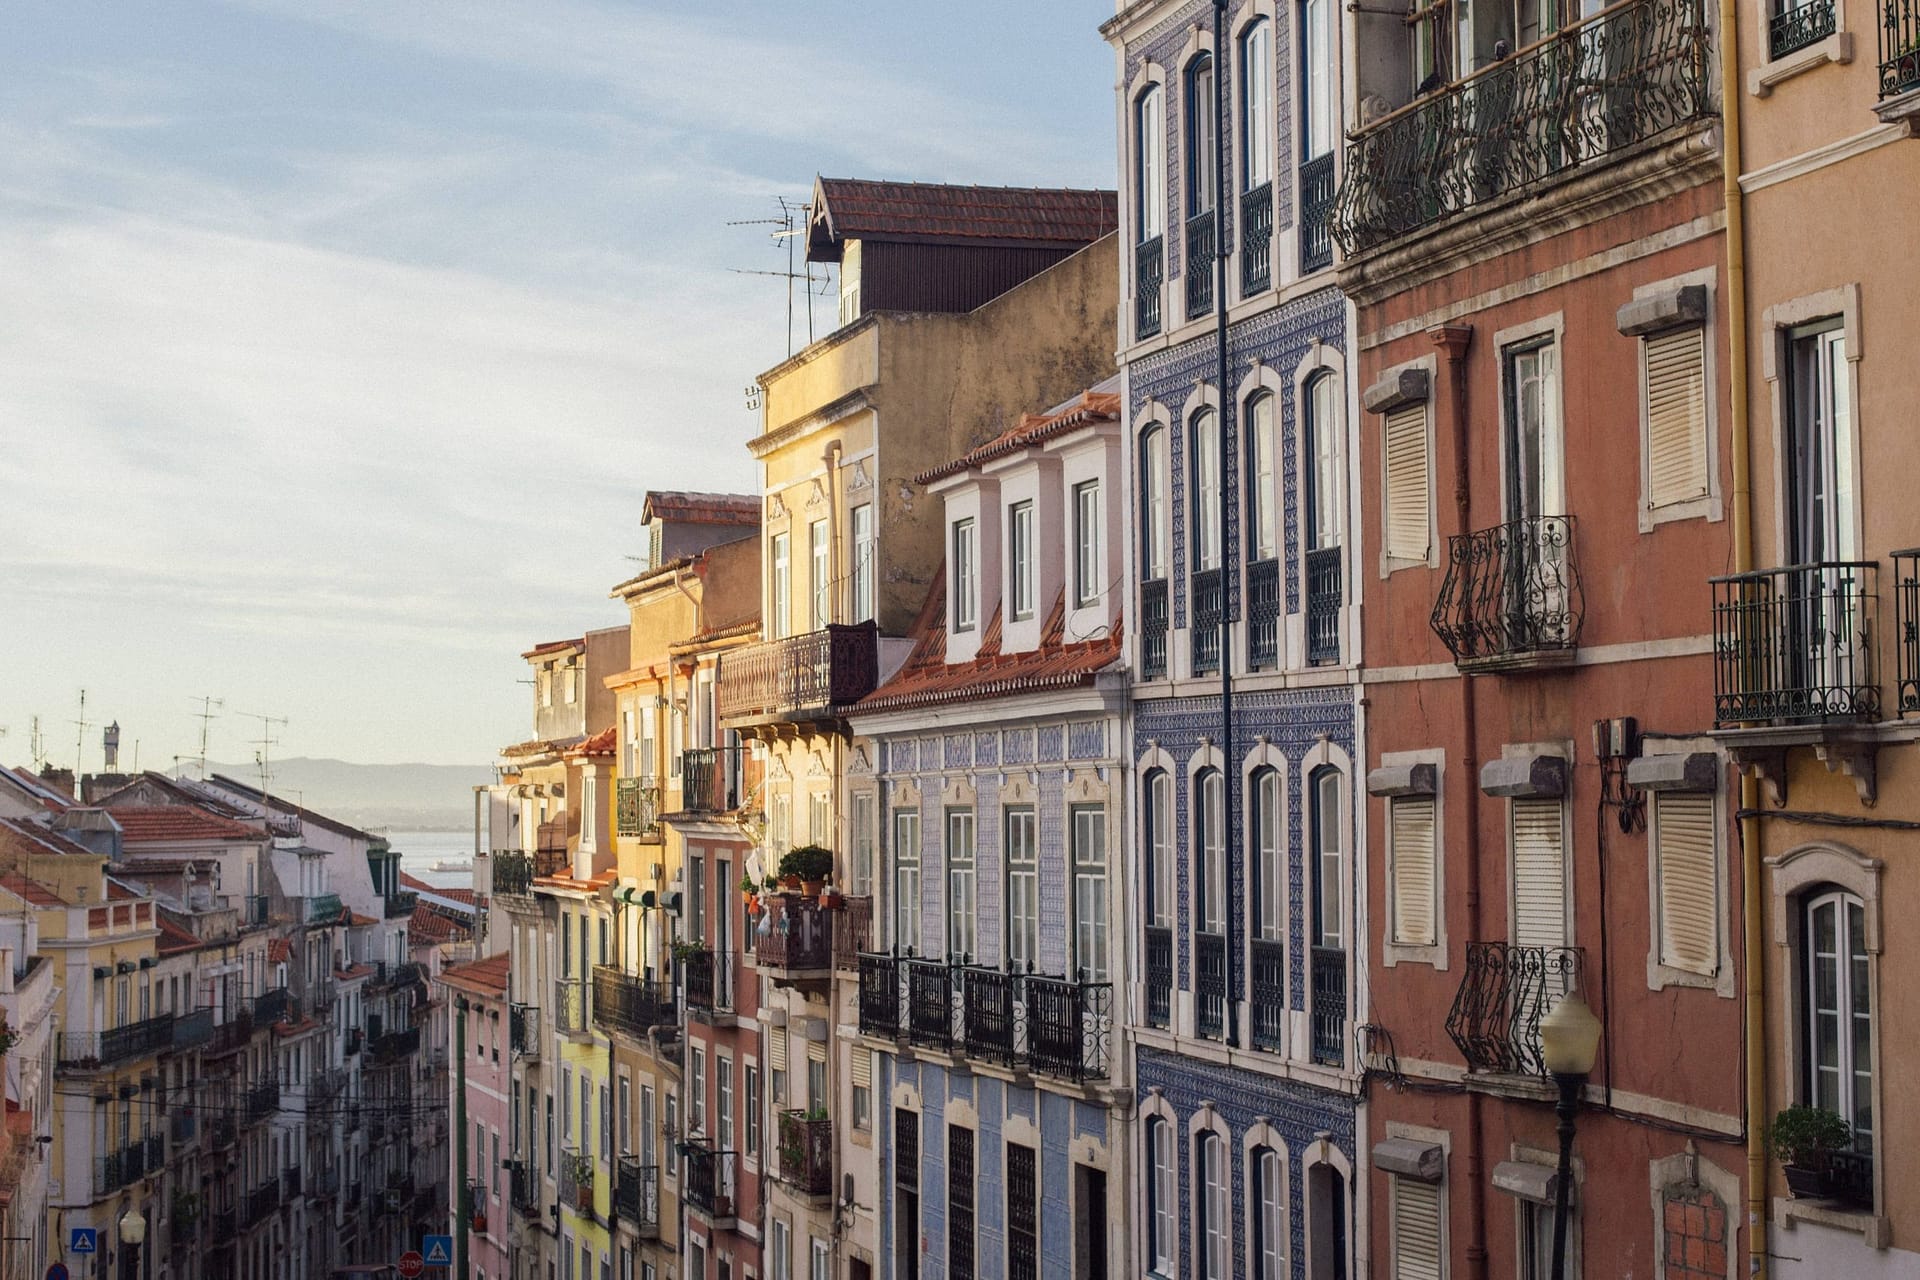 Investissement judicieux dans l'immobilier à Lisbonne et au Portugal